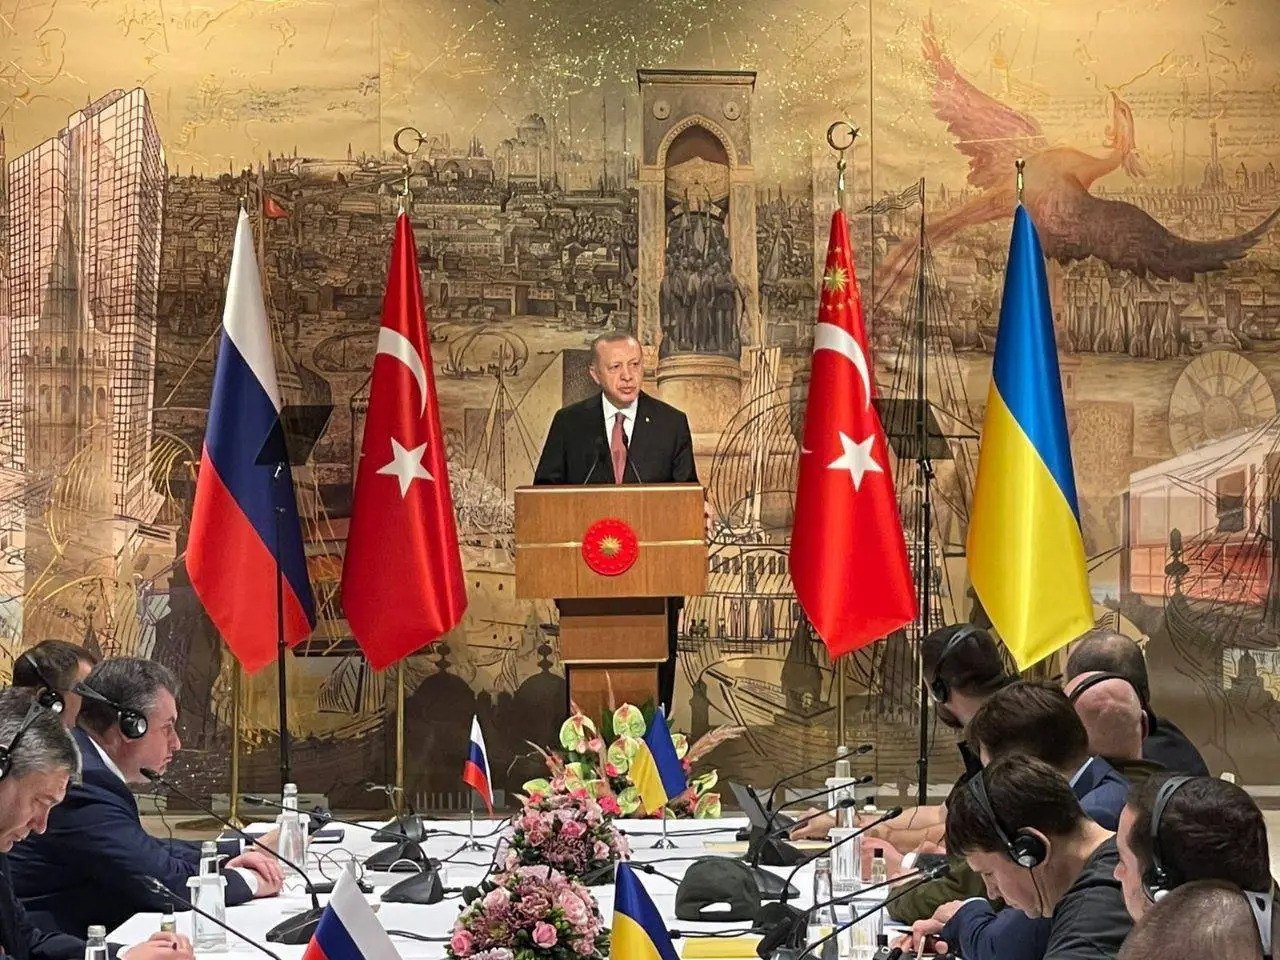 Erdoğan cerca di farsi spazio fra i grandi della politica mondiale grazie alla crisi ucraina